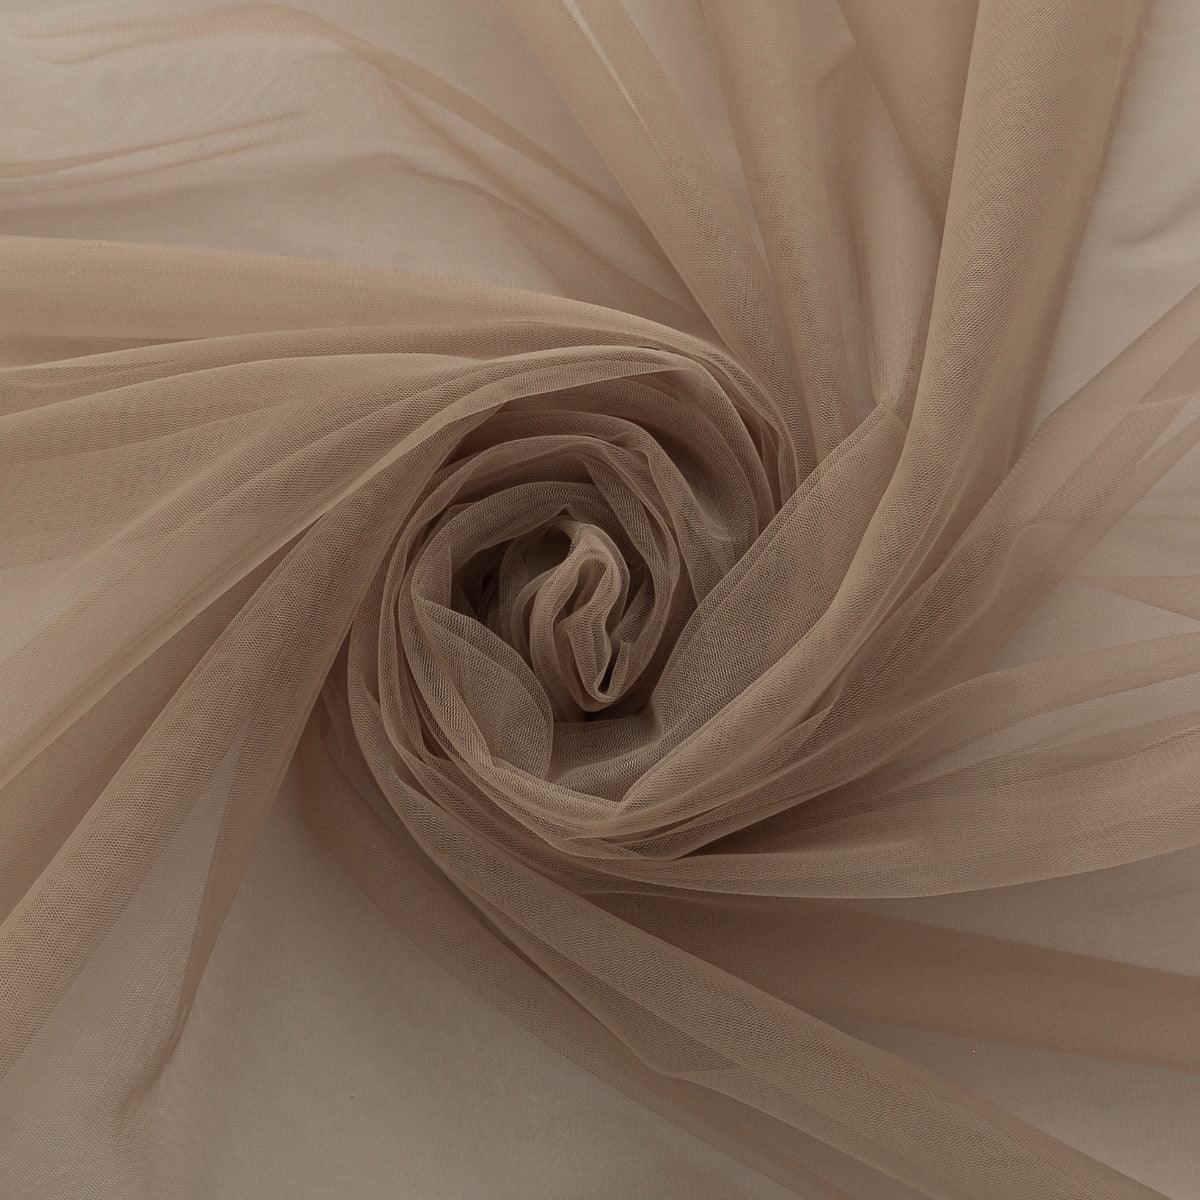 Tulle - Nude Inchis folosit la fabricarea rochiilor